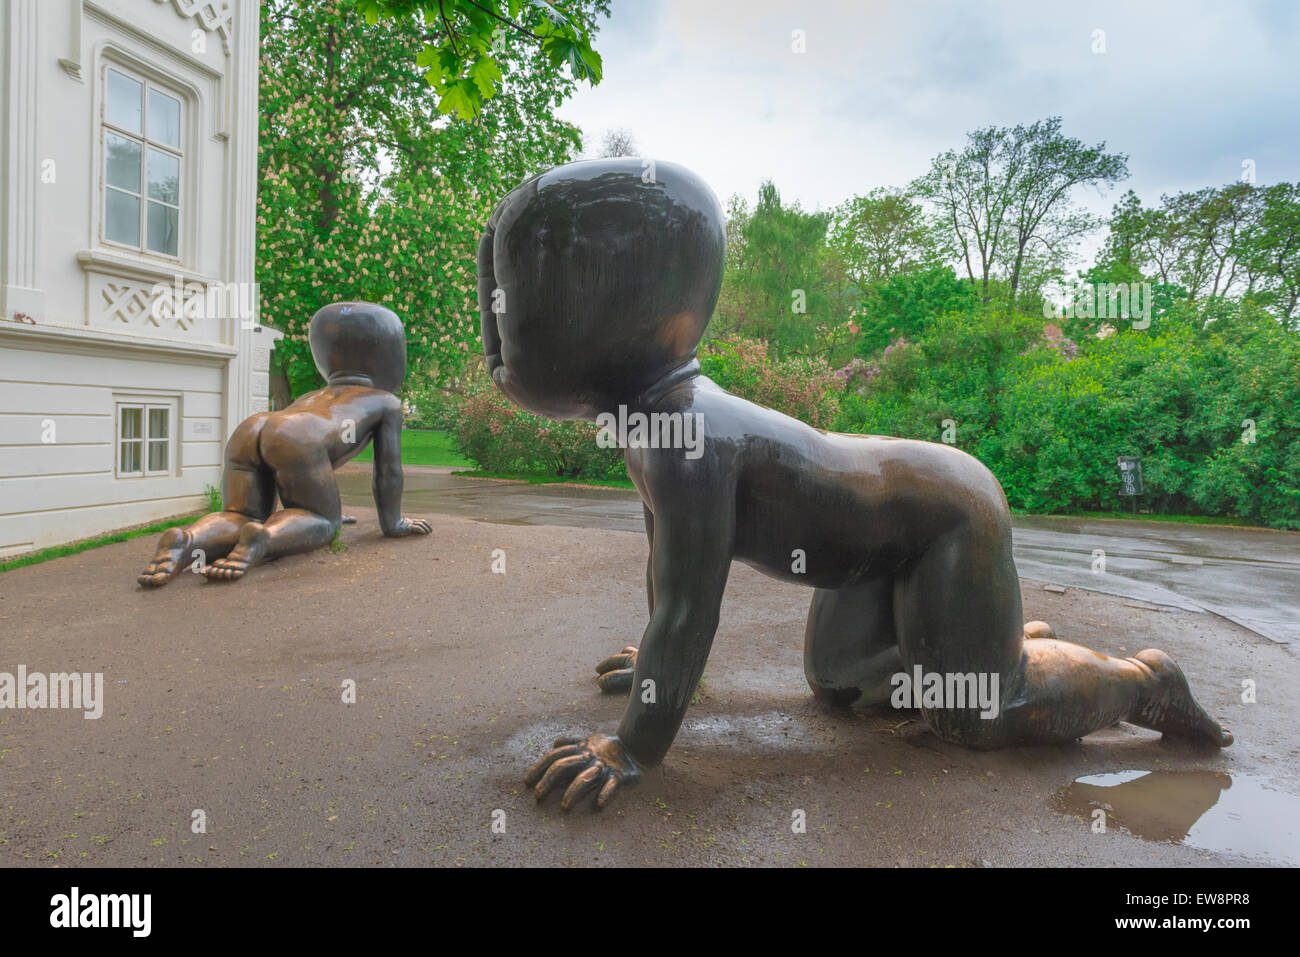 Cerny Praga, vista di sculture di sinister bambini senza volto da David Cerny nel parco del Museo Kampa a Praga, Repubblica Ceca. Foto Stock